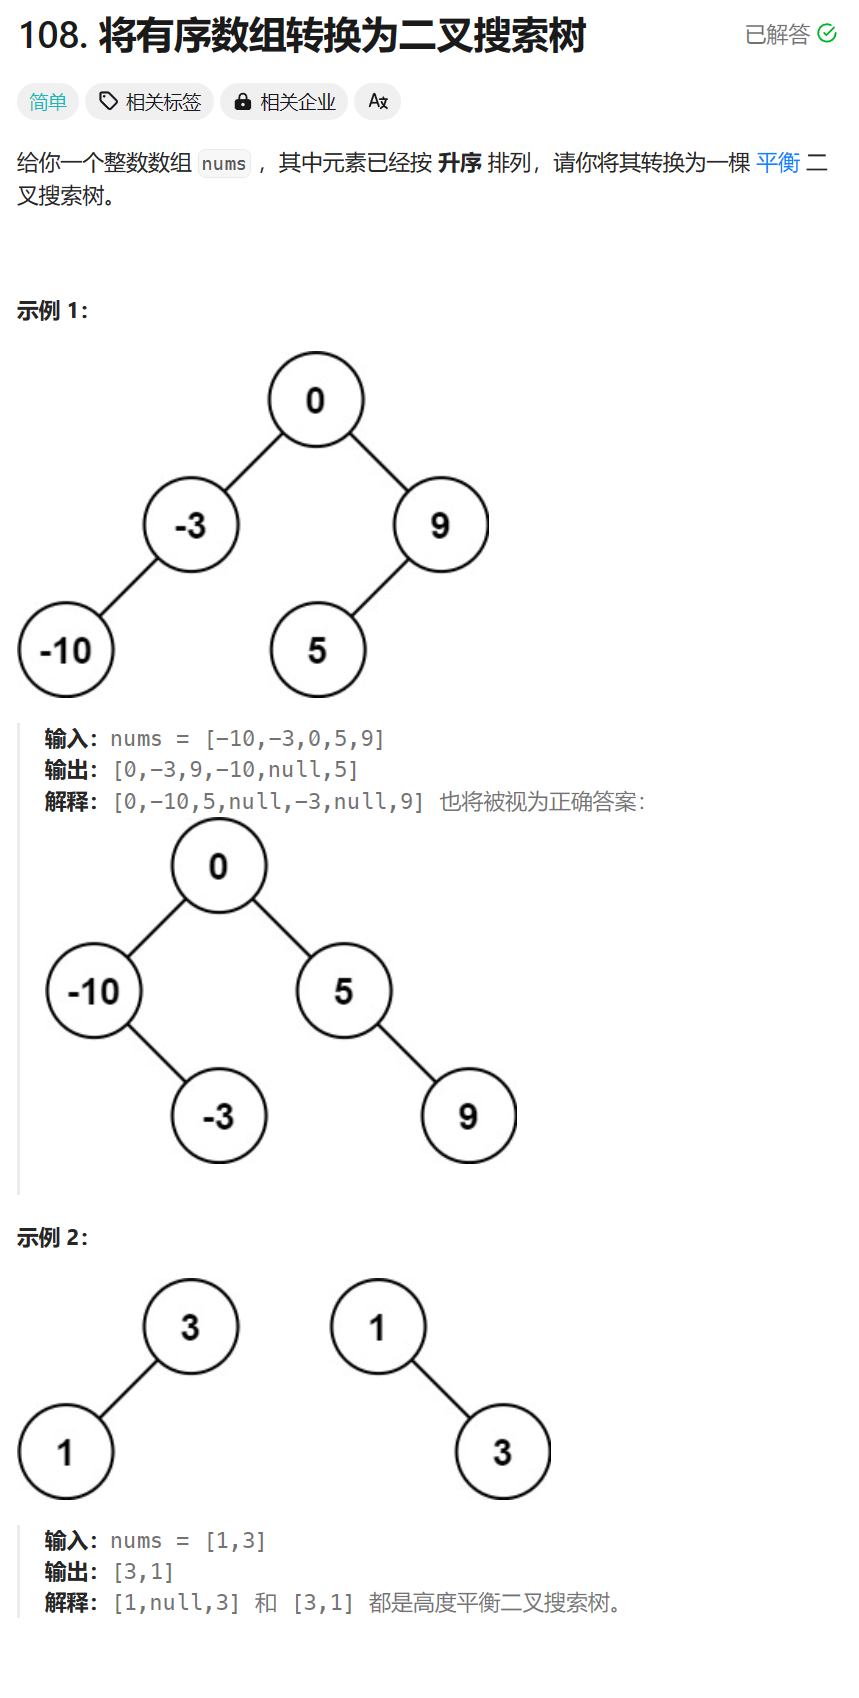 每日两题 / 108. 将有序数组转换为二叉搜索树 && 543. 二叉树的直径（LeetCode热题100）